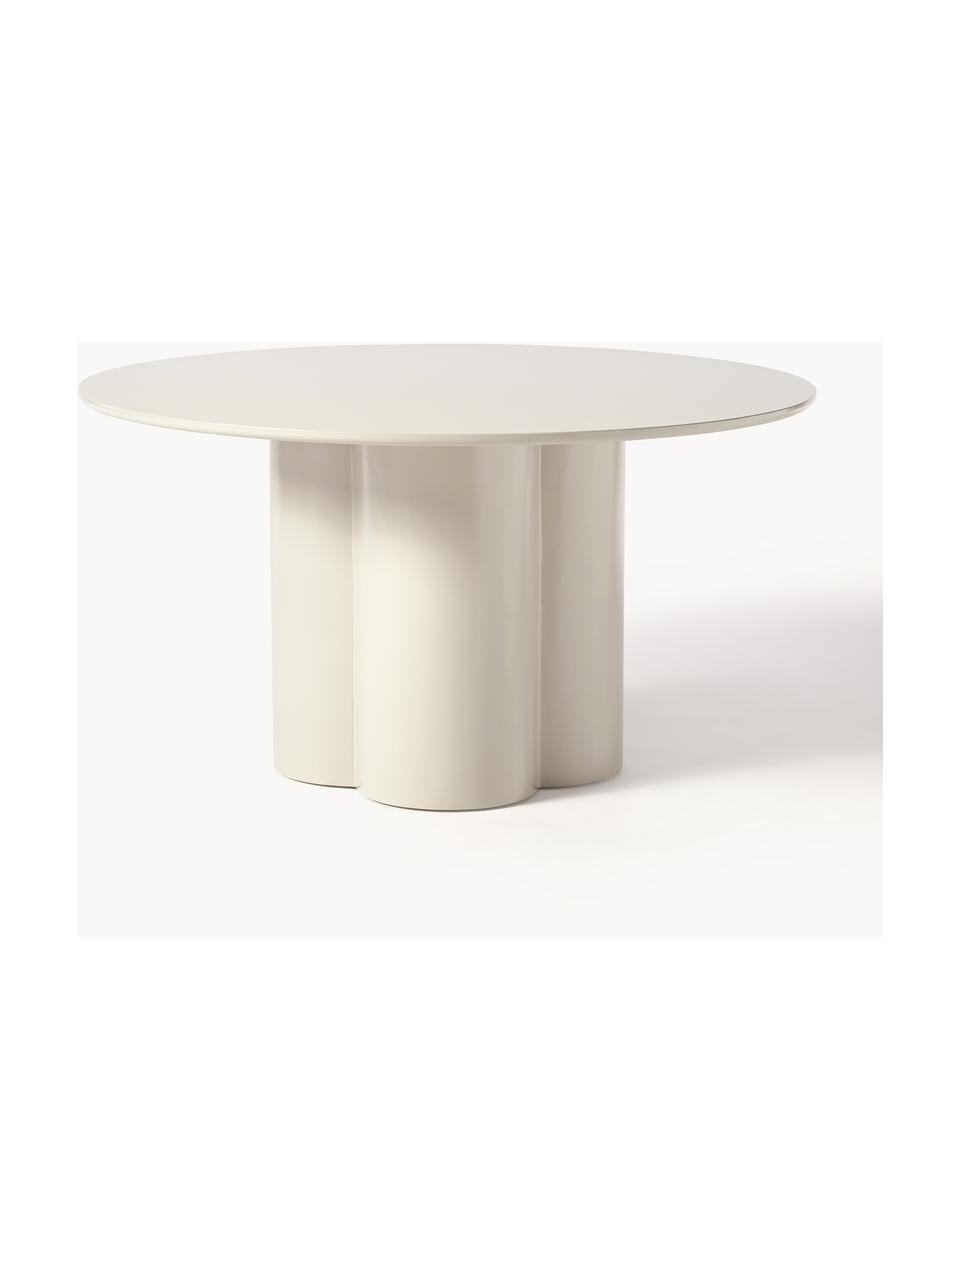 Kulatý jídelní stůl ze dřeva Keva, různé velikosti, MDF deska (dřevovláknitá deska střední hustoty), certifikace FSC, potažená, Tlumeně bílá, Ø 140 cm